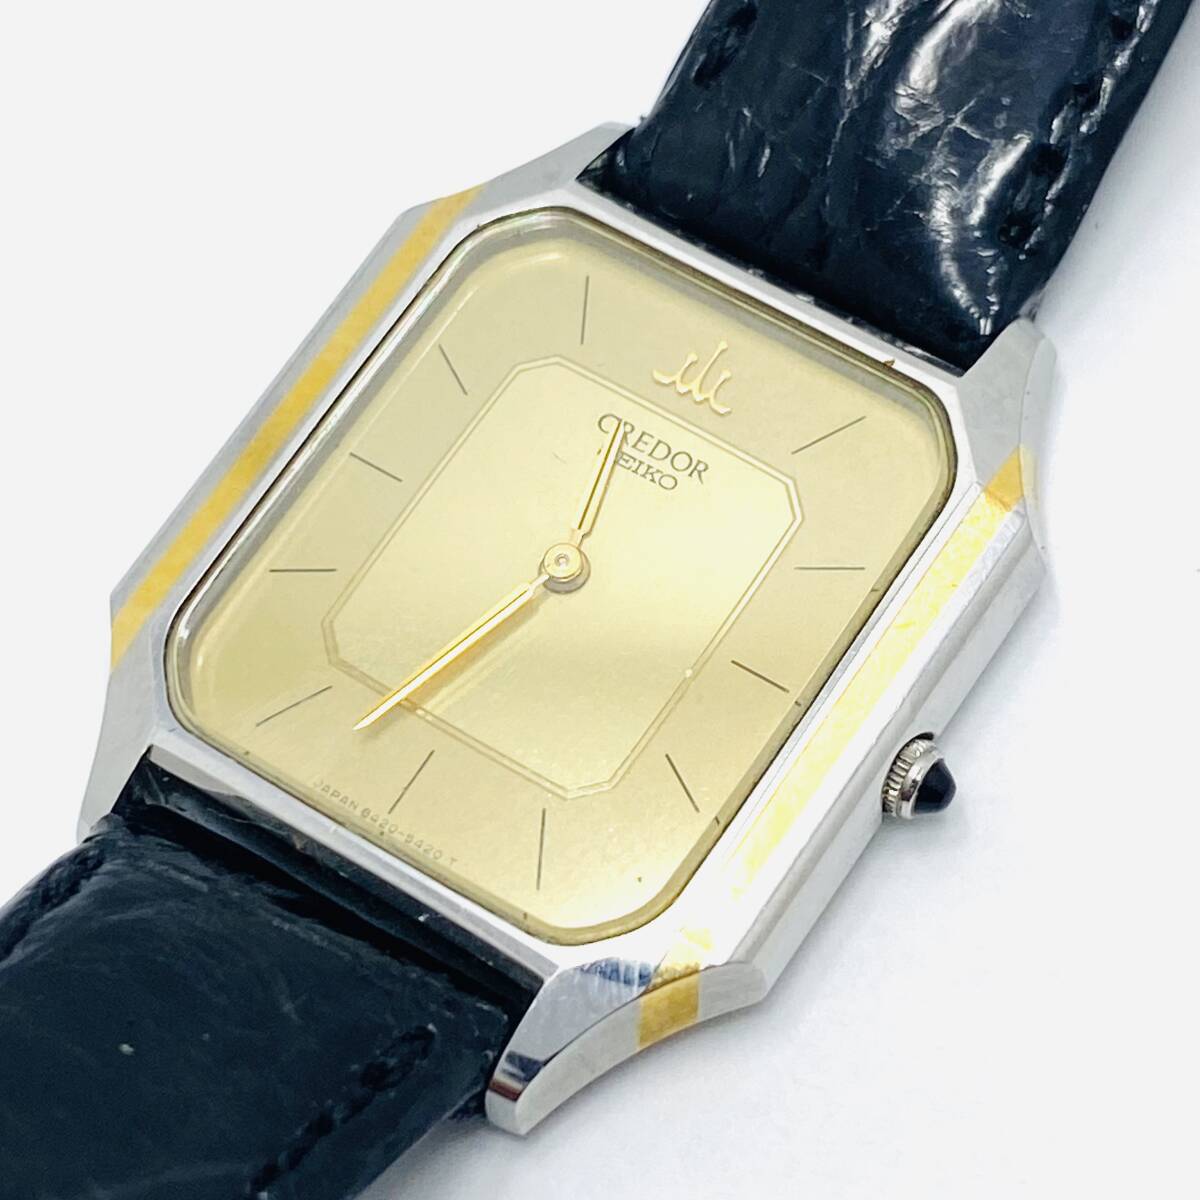 SEIKO セイコー CREDOR クレドール クォーツ腕時計 8420-5370 電池交換済み 動作確認済みの画像3